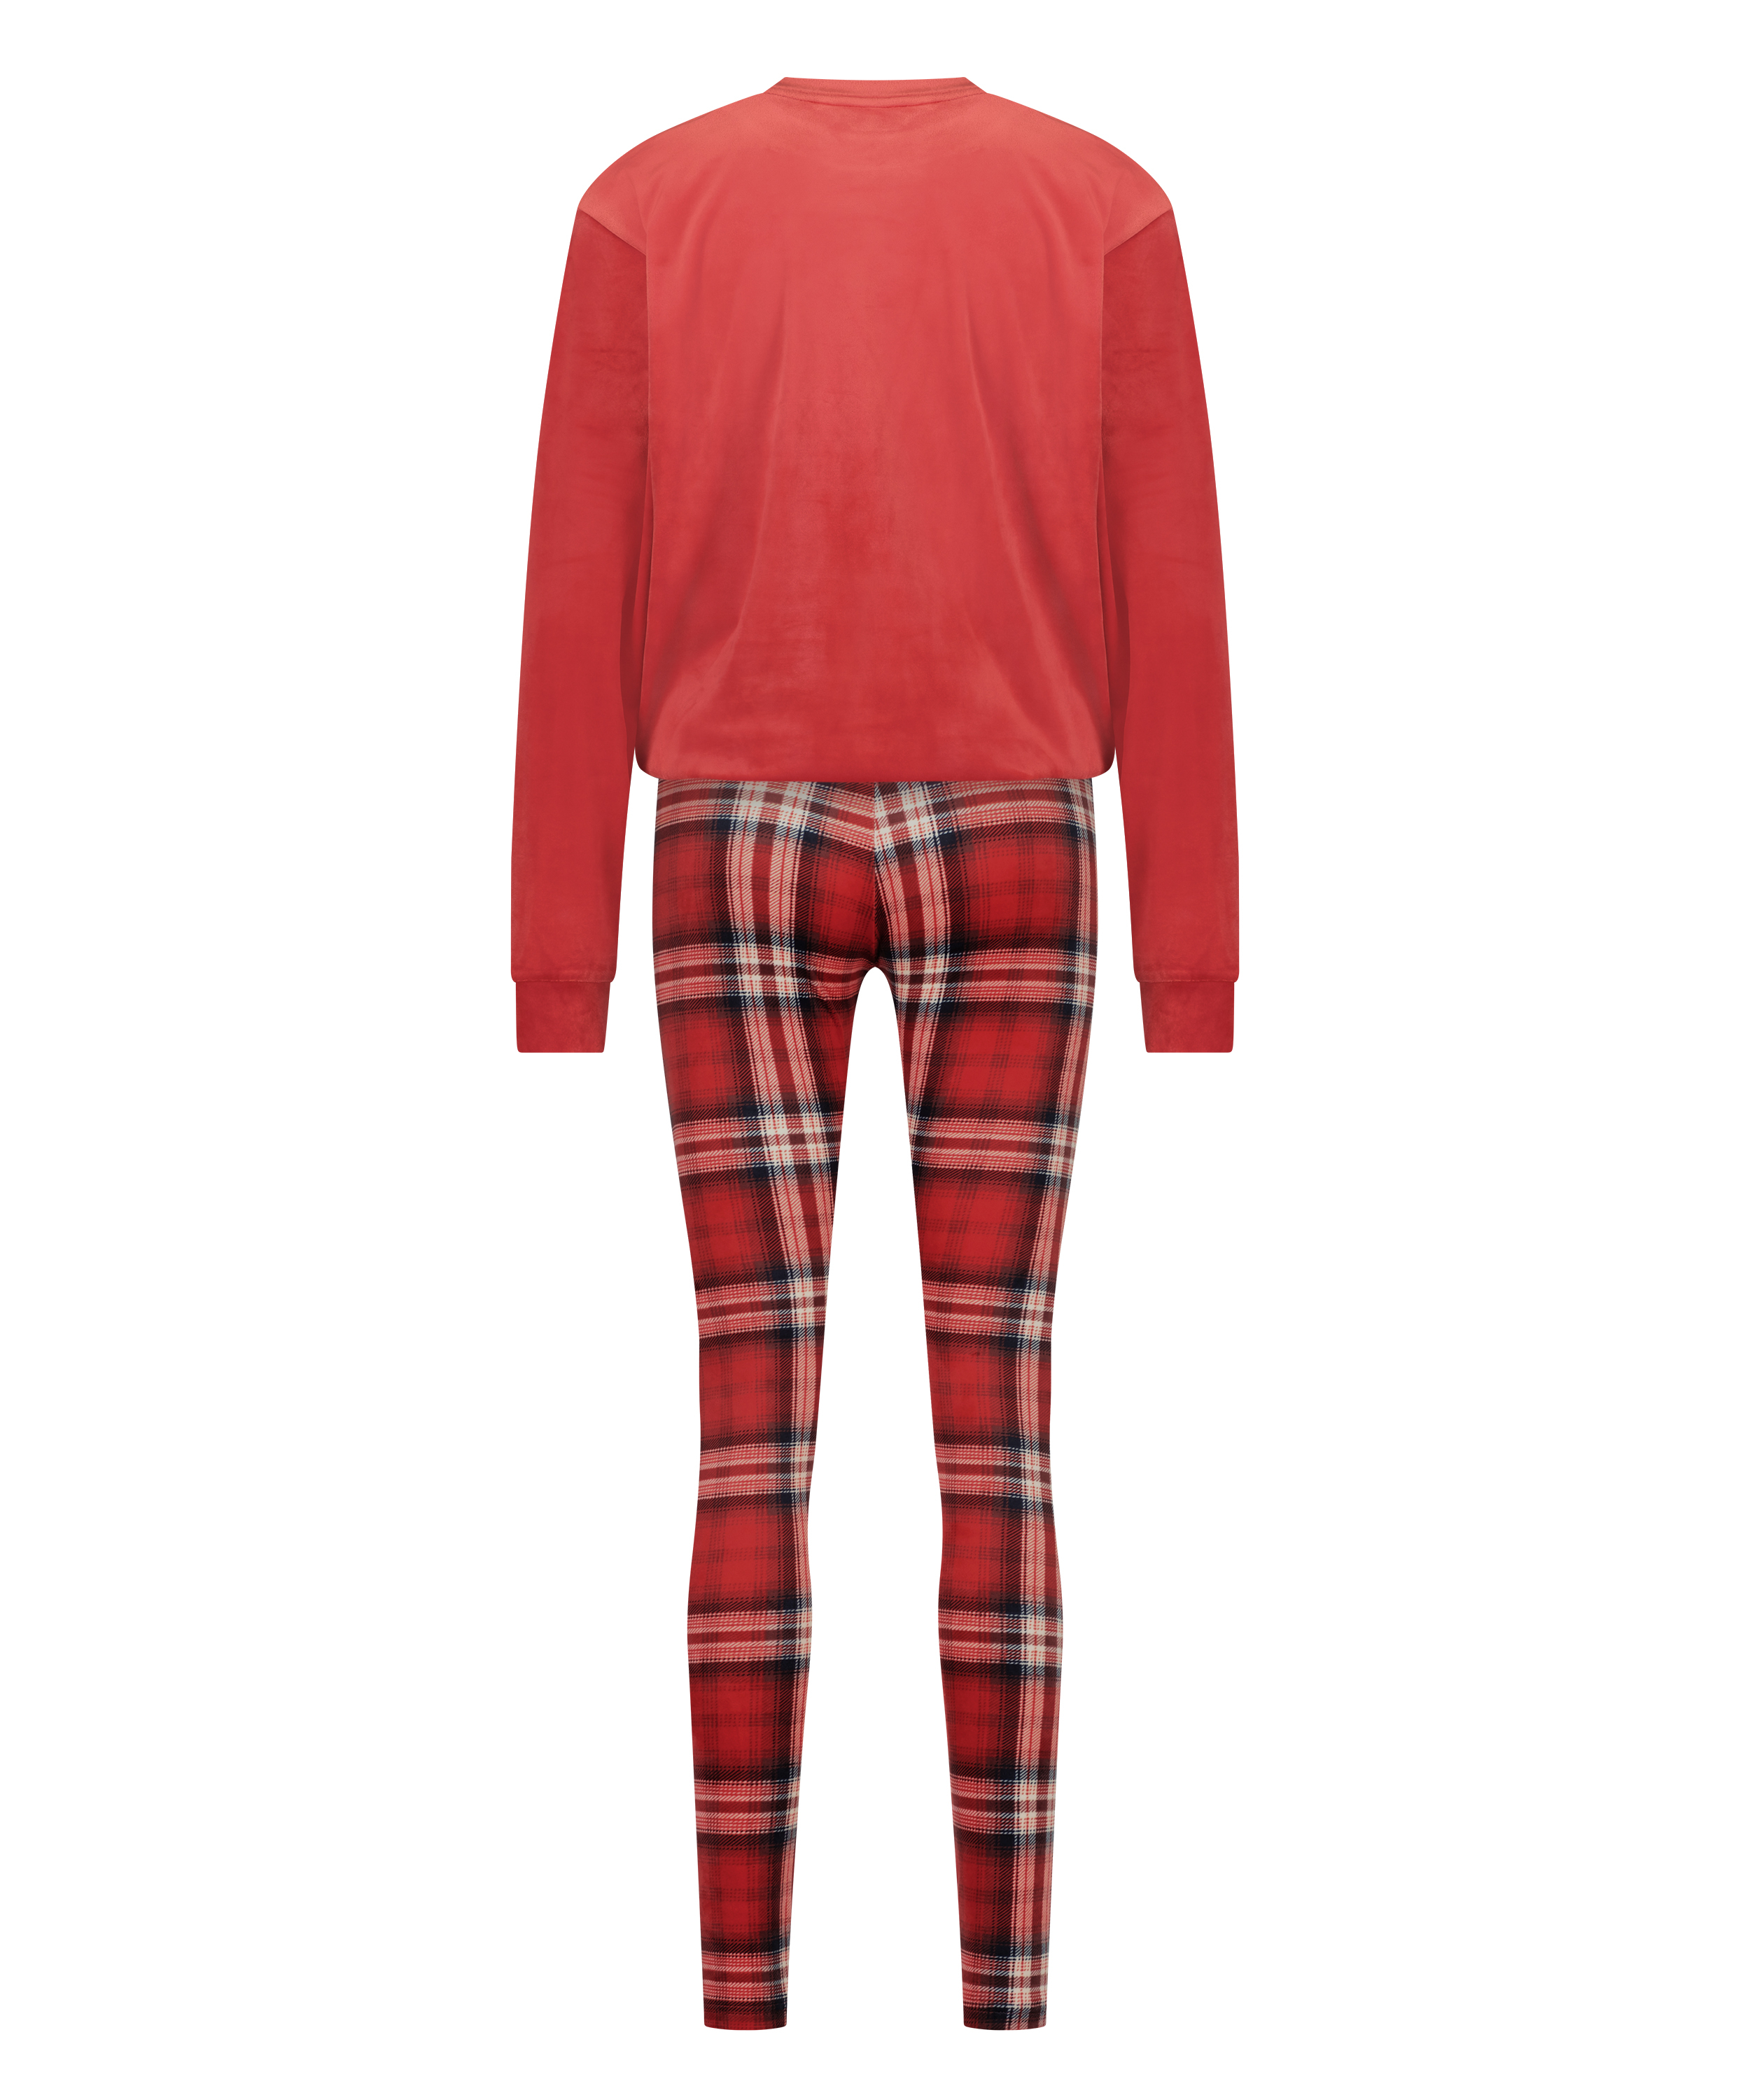 Pyjama-Set mit Tasche, Rot, main